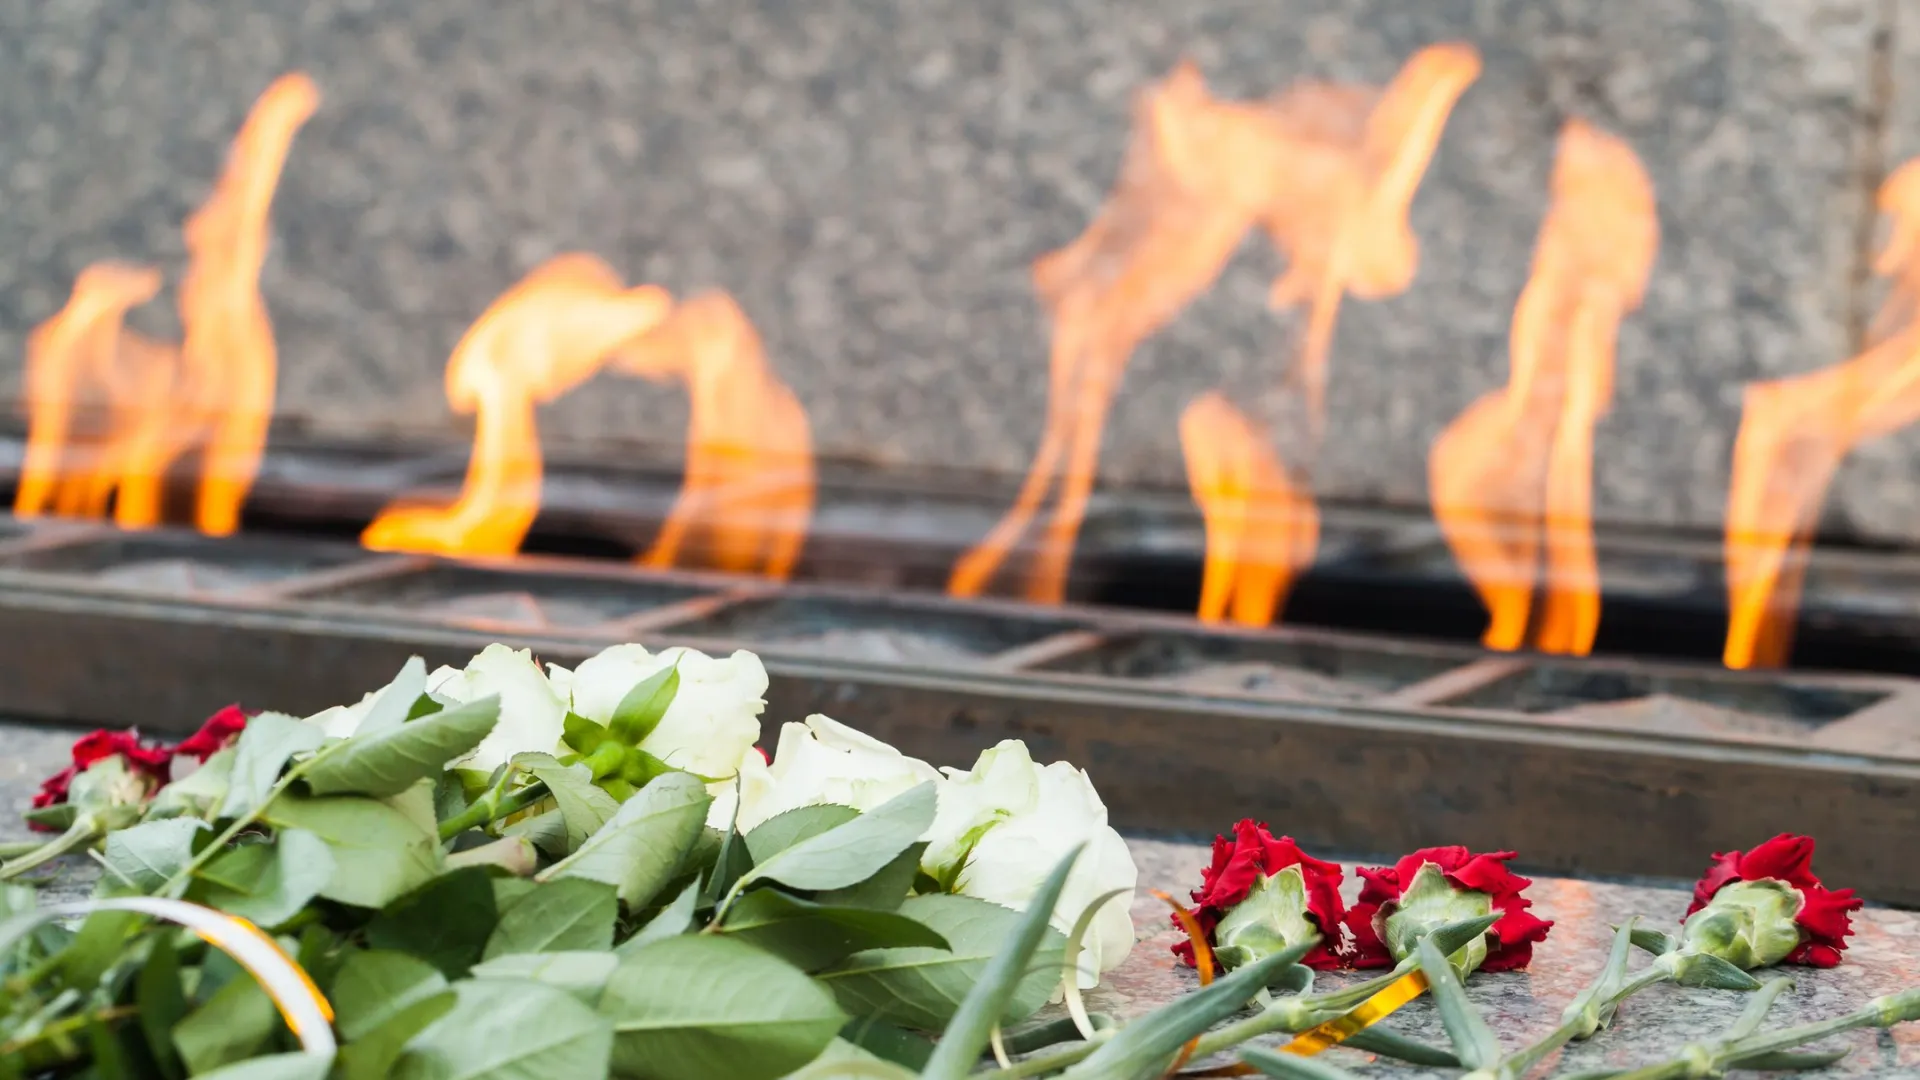 Житель Муравленко погиб в СВО. Фото: Evannovostro/Shutterstock/Fotodom